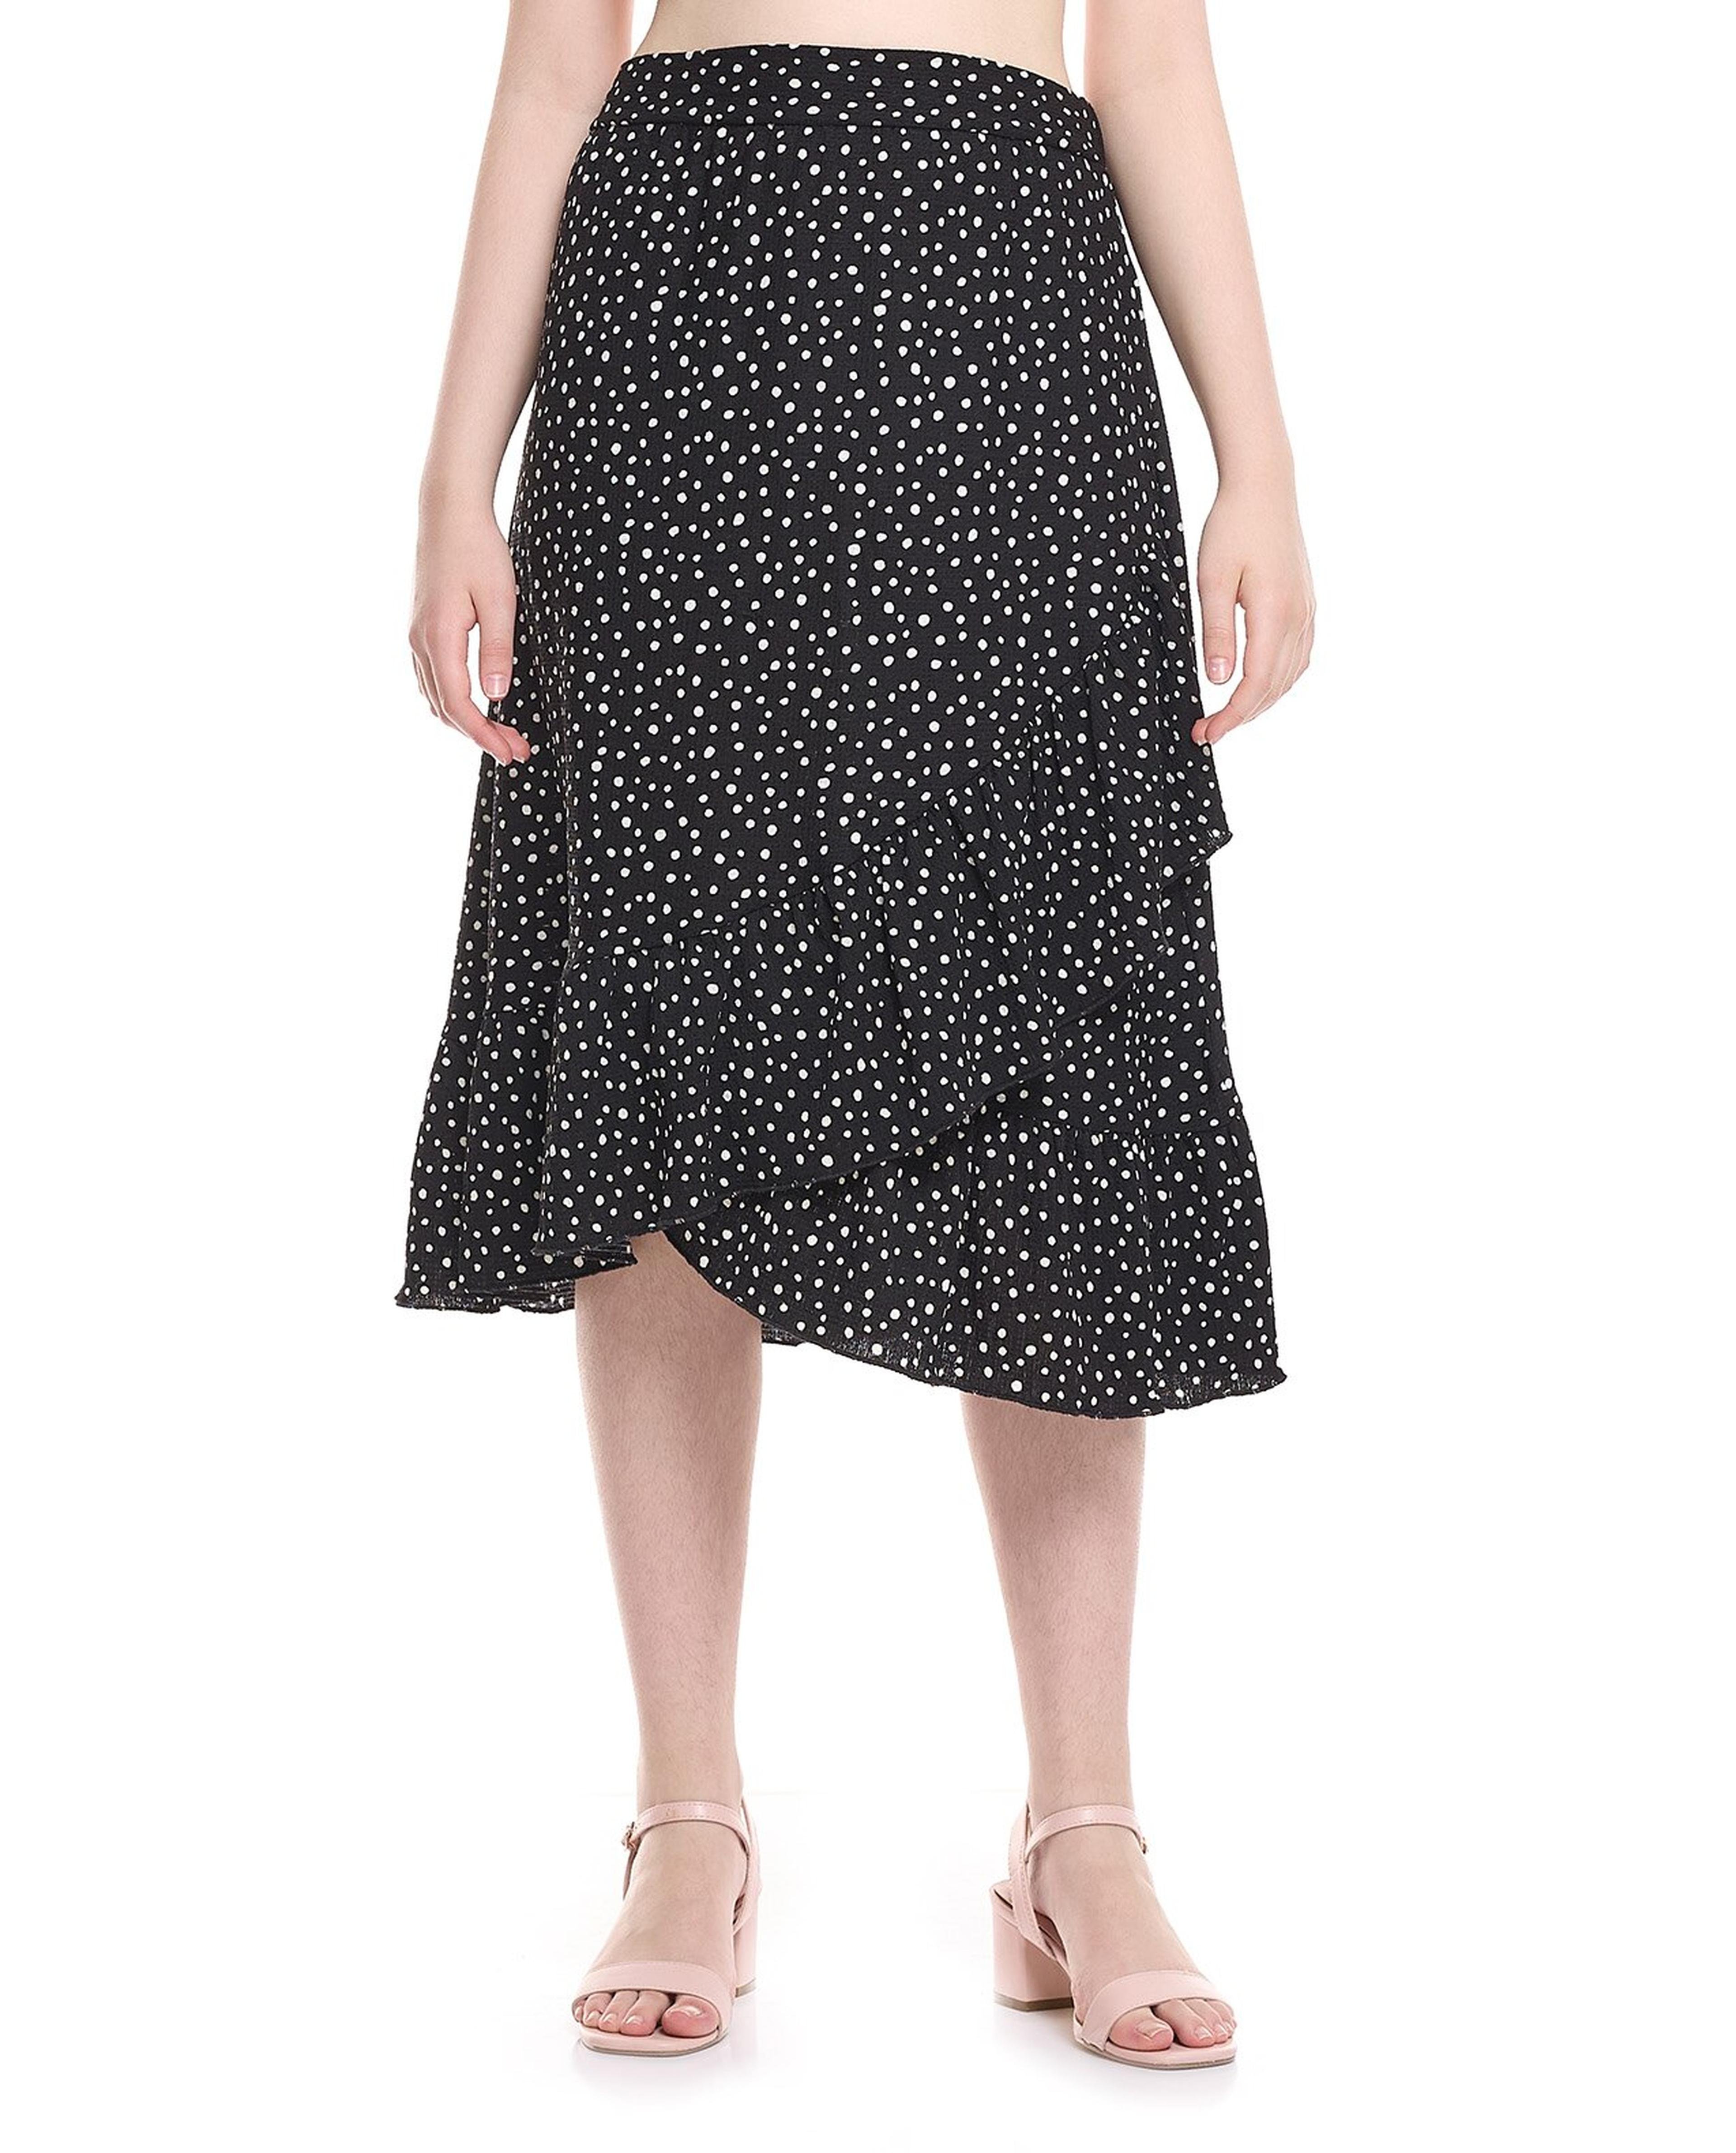 Patterned Elastic Waist Asymmetric Skirt